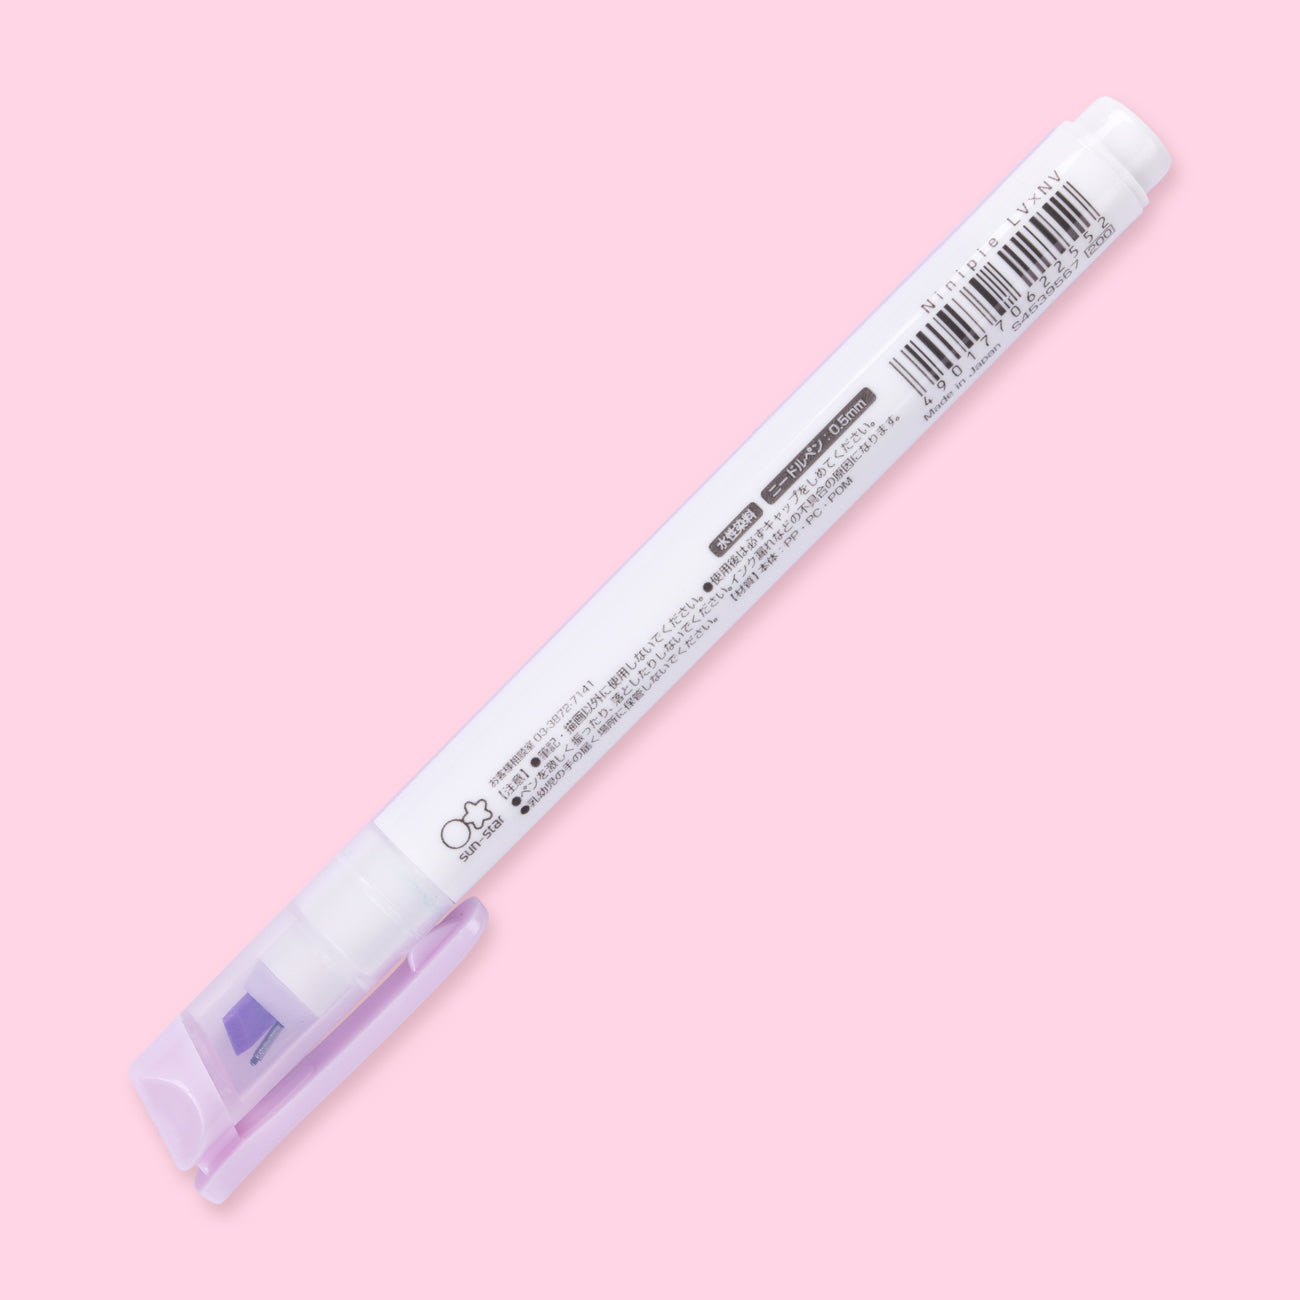 Sun-Star Ninipie Pen & Marker - Light Violet + Navy